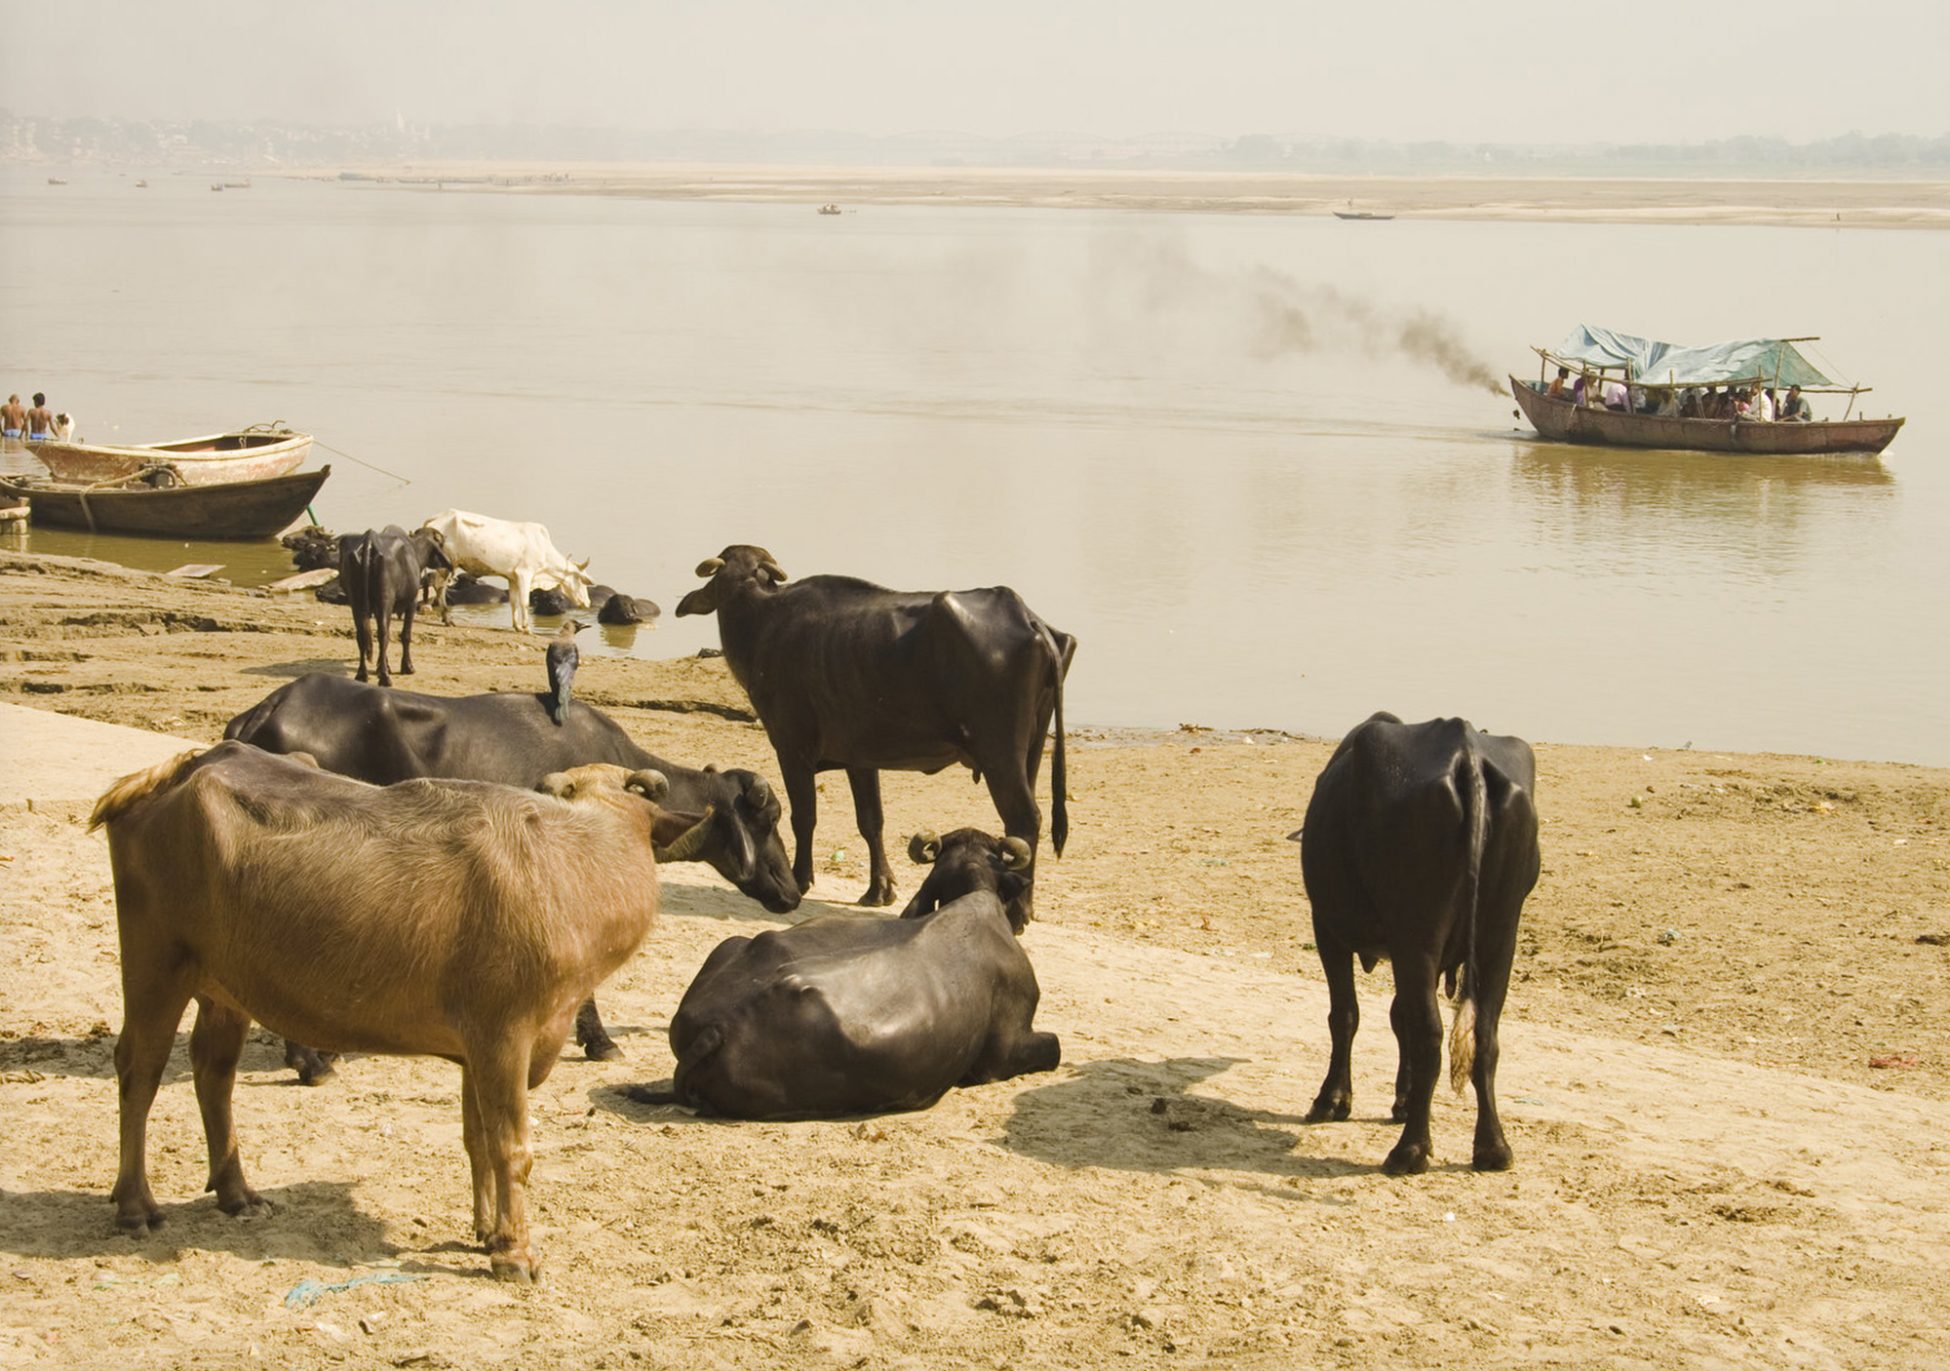 Fotos de India. Un bote y unas vacas en el río Ganges a su paso por la ciudad sagrada de Varanasi (Benares) en India. Fotografías de viaje de mochileros.